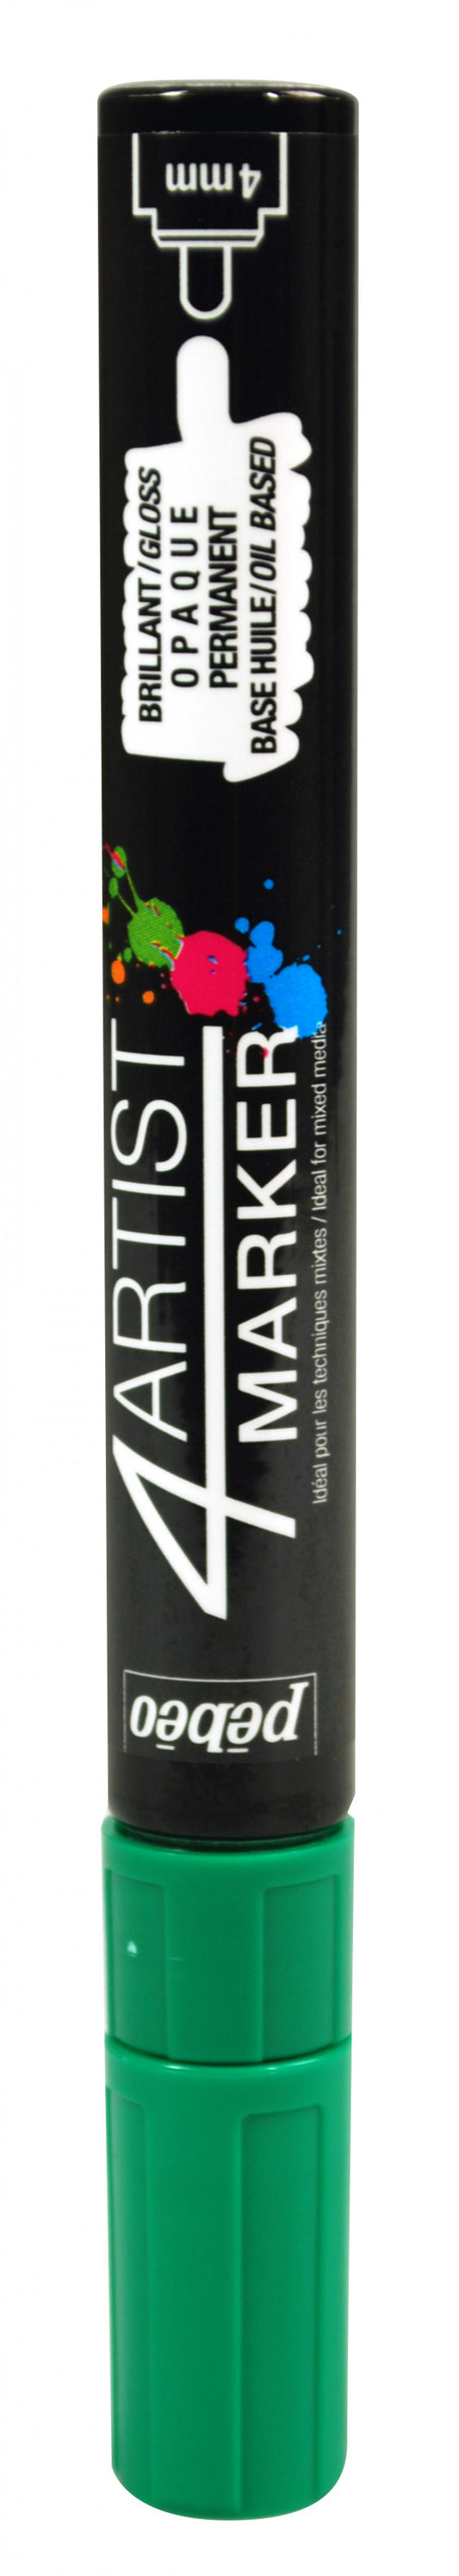 4Artist marker pen, 4mm tip, dark green